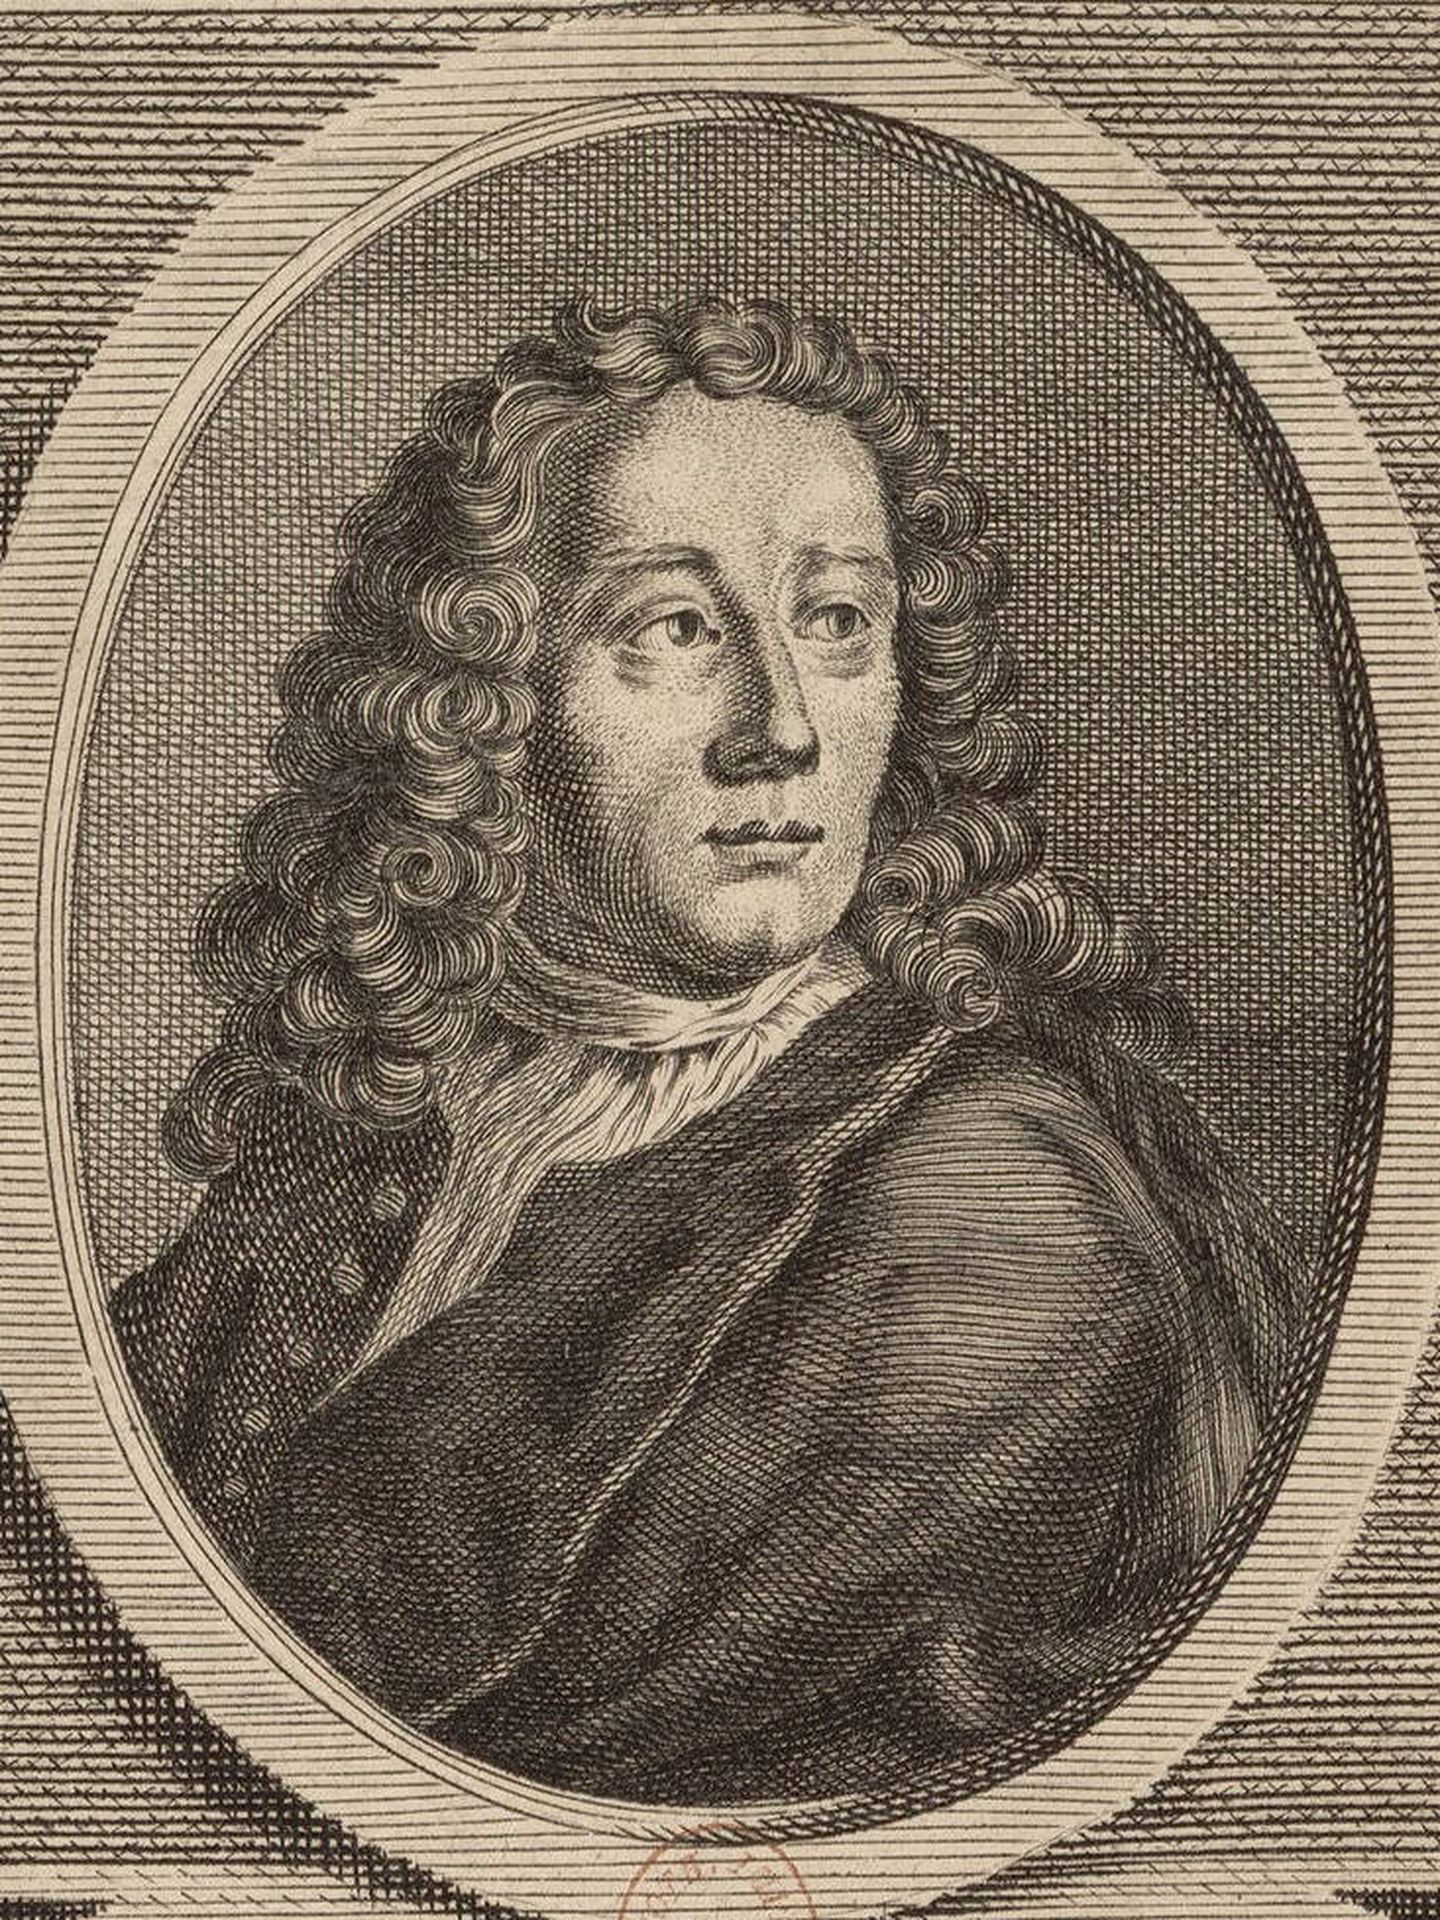 Jean Baptiste de Boyer, marqués de Argens